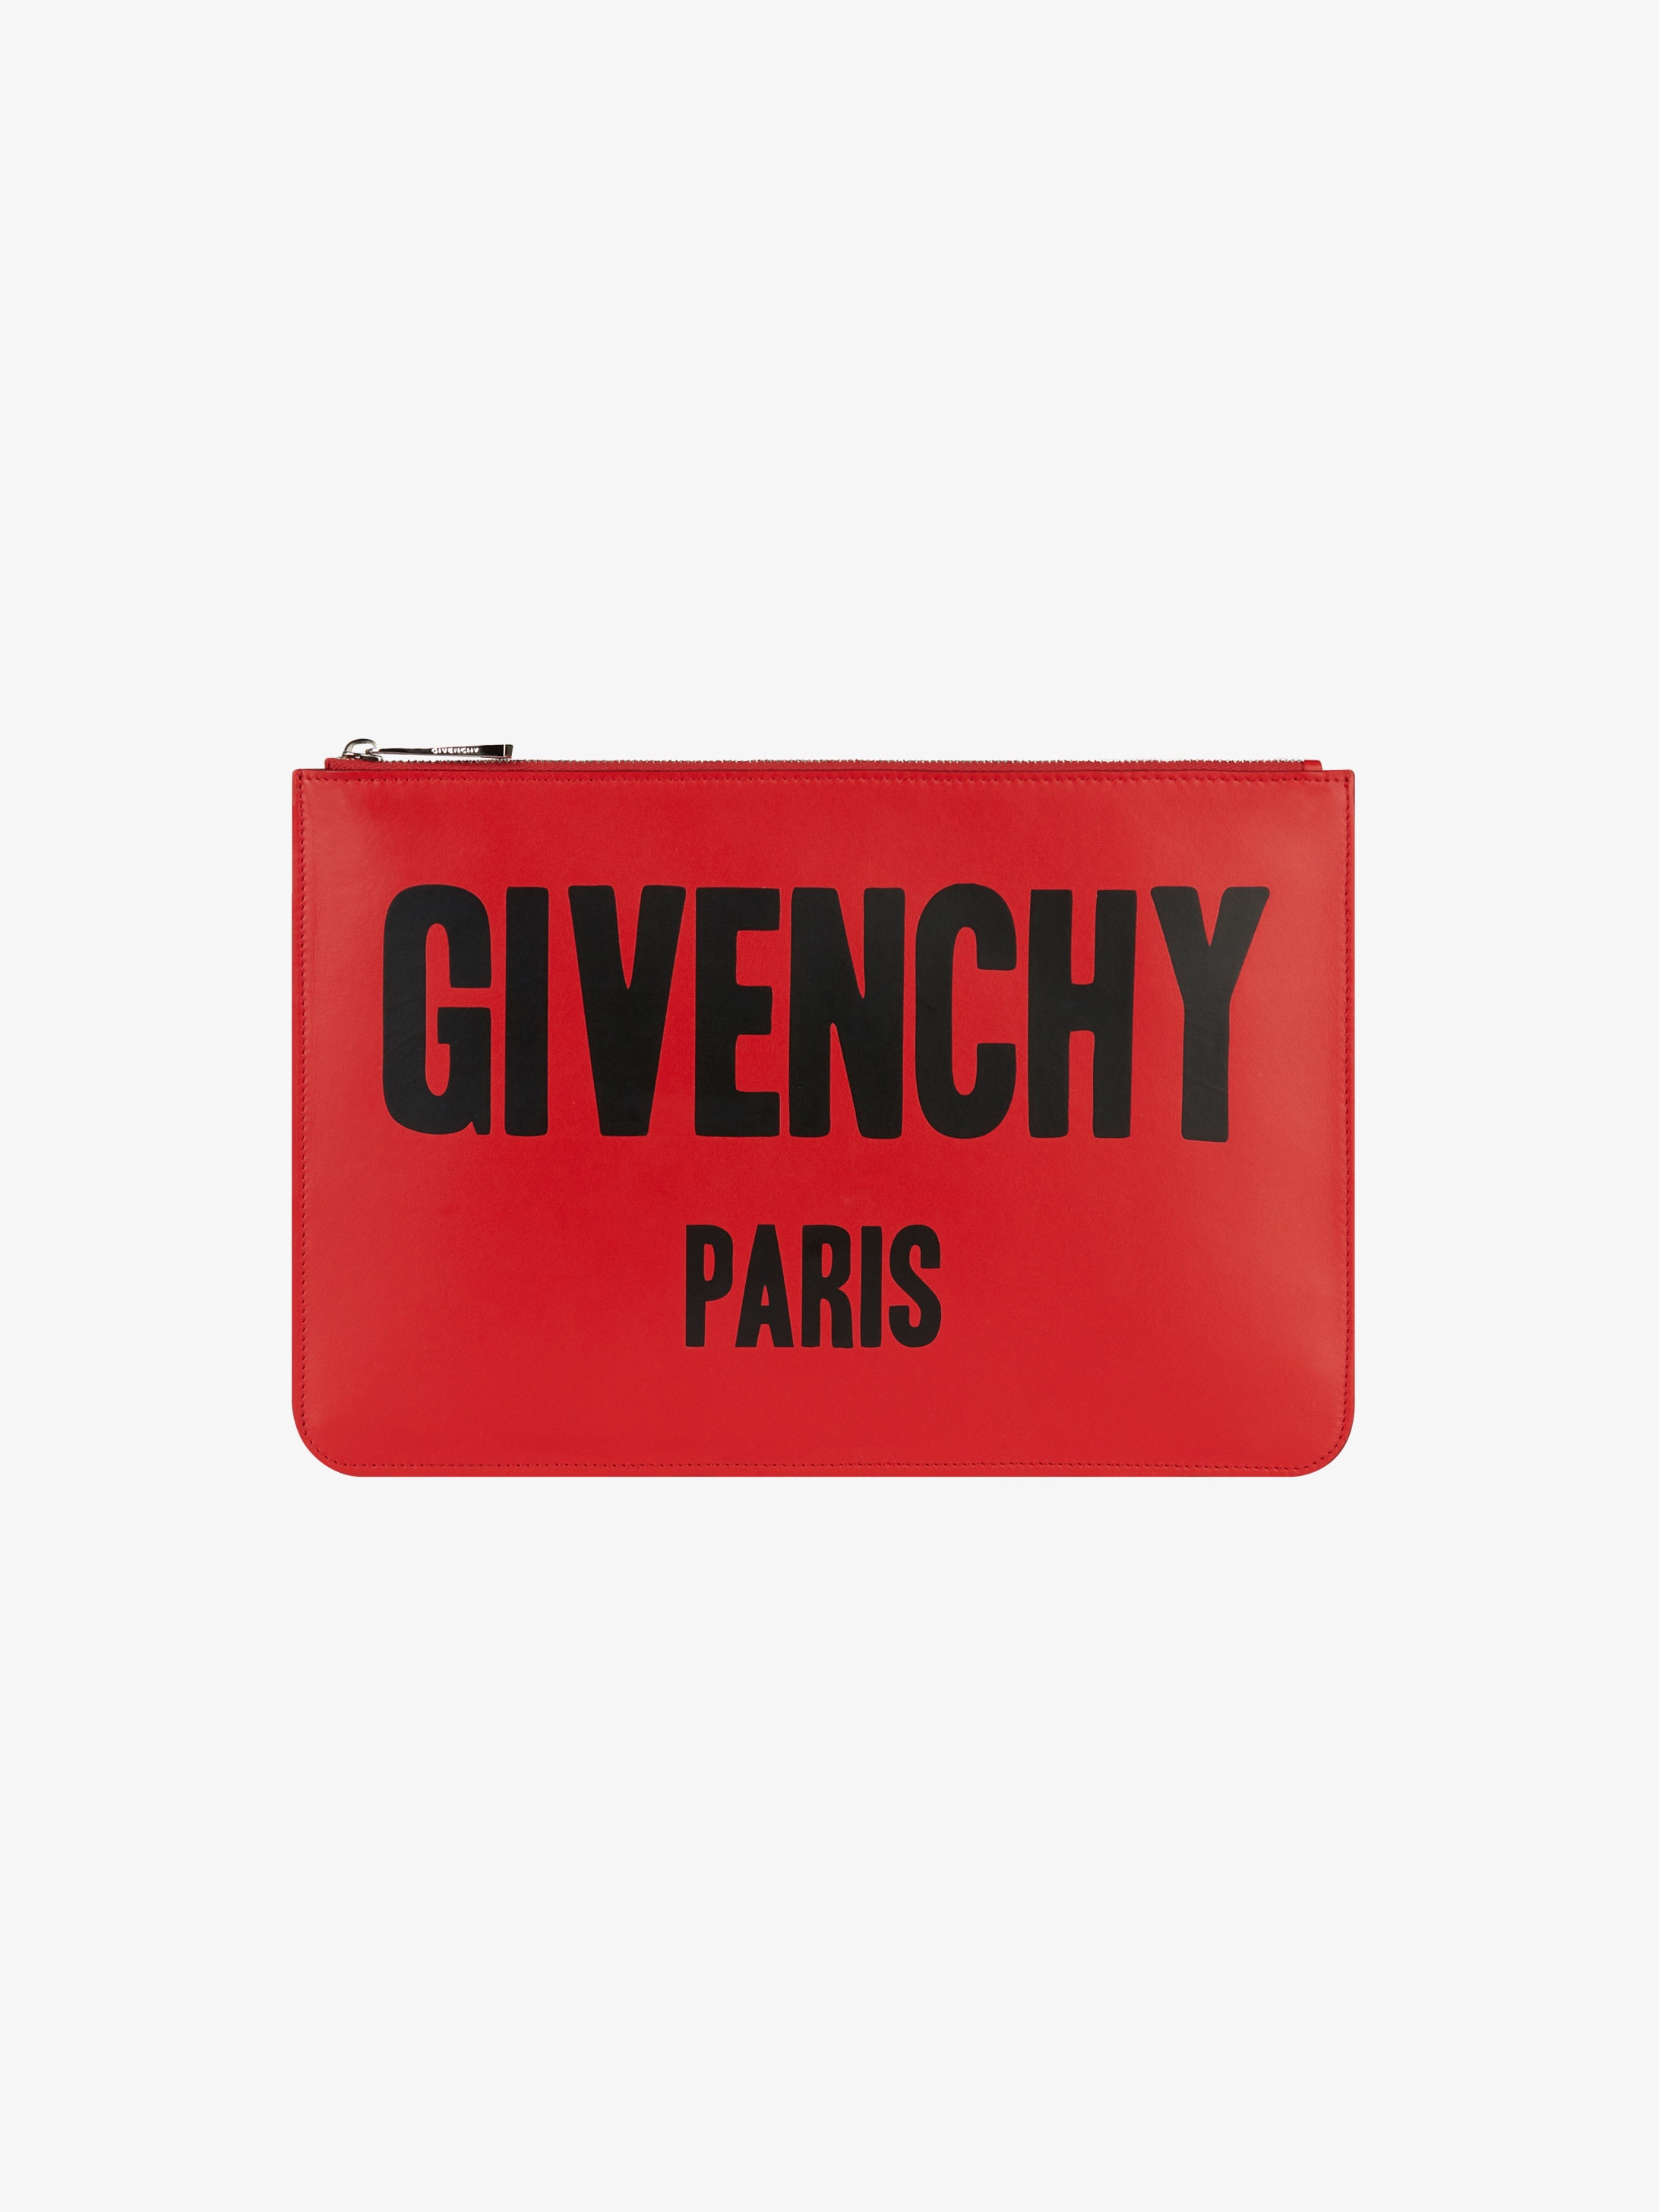 Givenchy PARIS pouch | GIVENCHY Paris